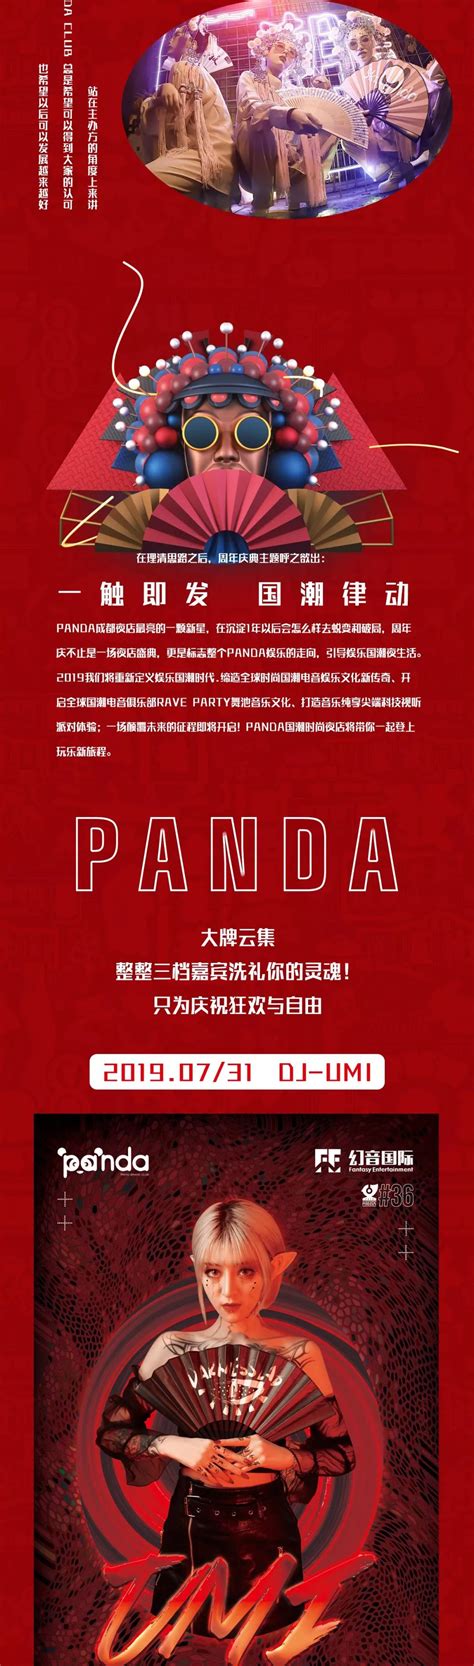 成都PANDA CLUB丨2019.07.31店庆嘉年华 – 成都夜店网